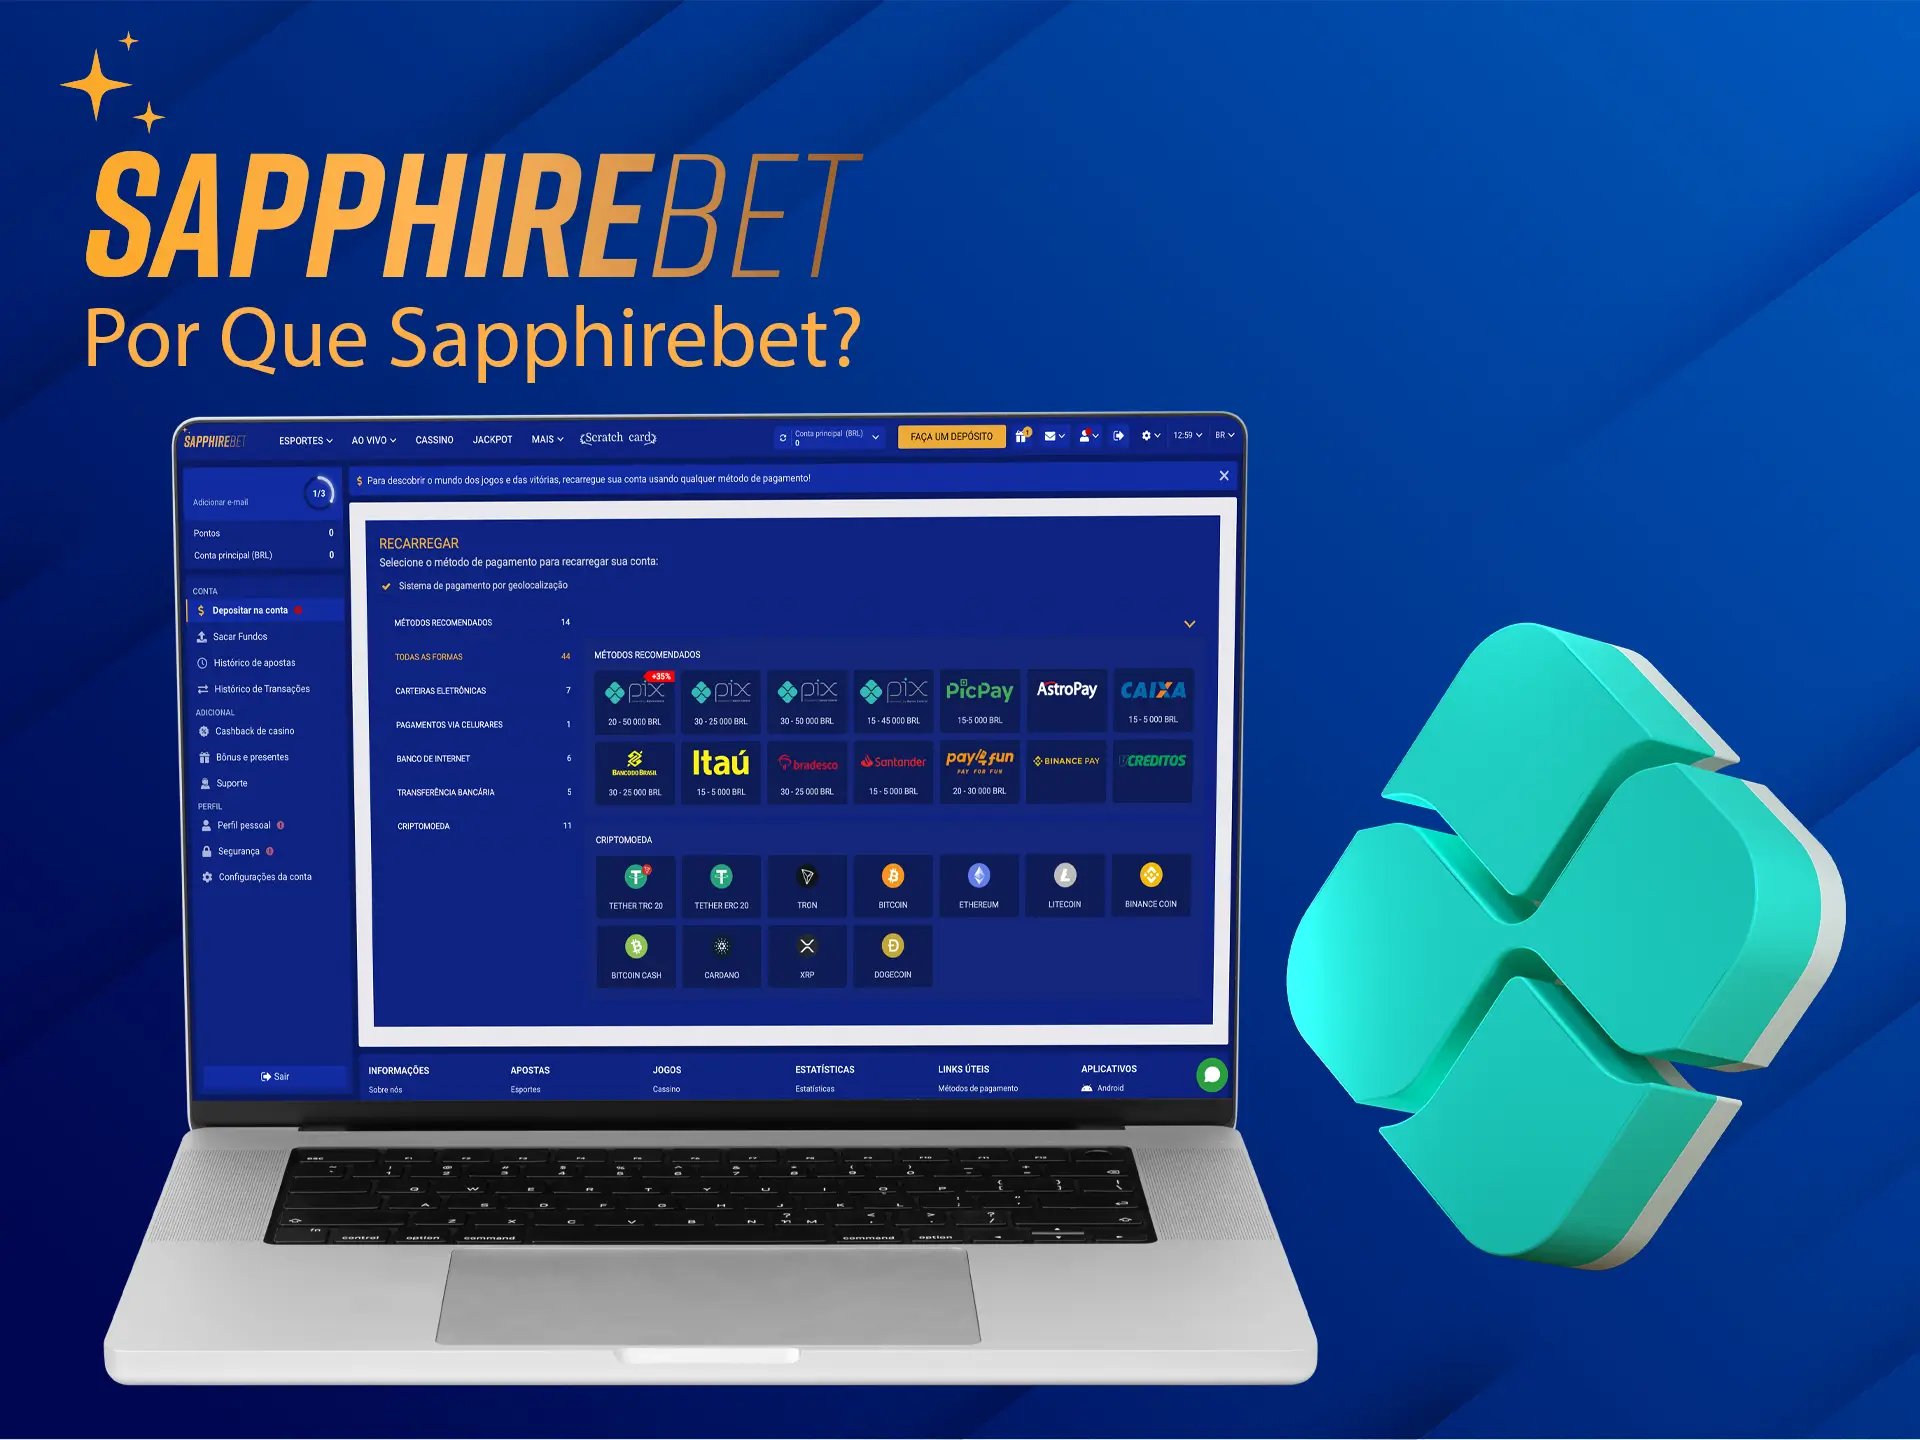 Jogue no SapphireBet, pois você encontrará muitas maneiras de recarregar sua conta aqui.